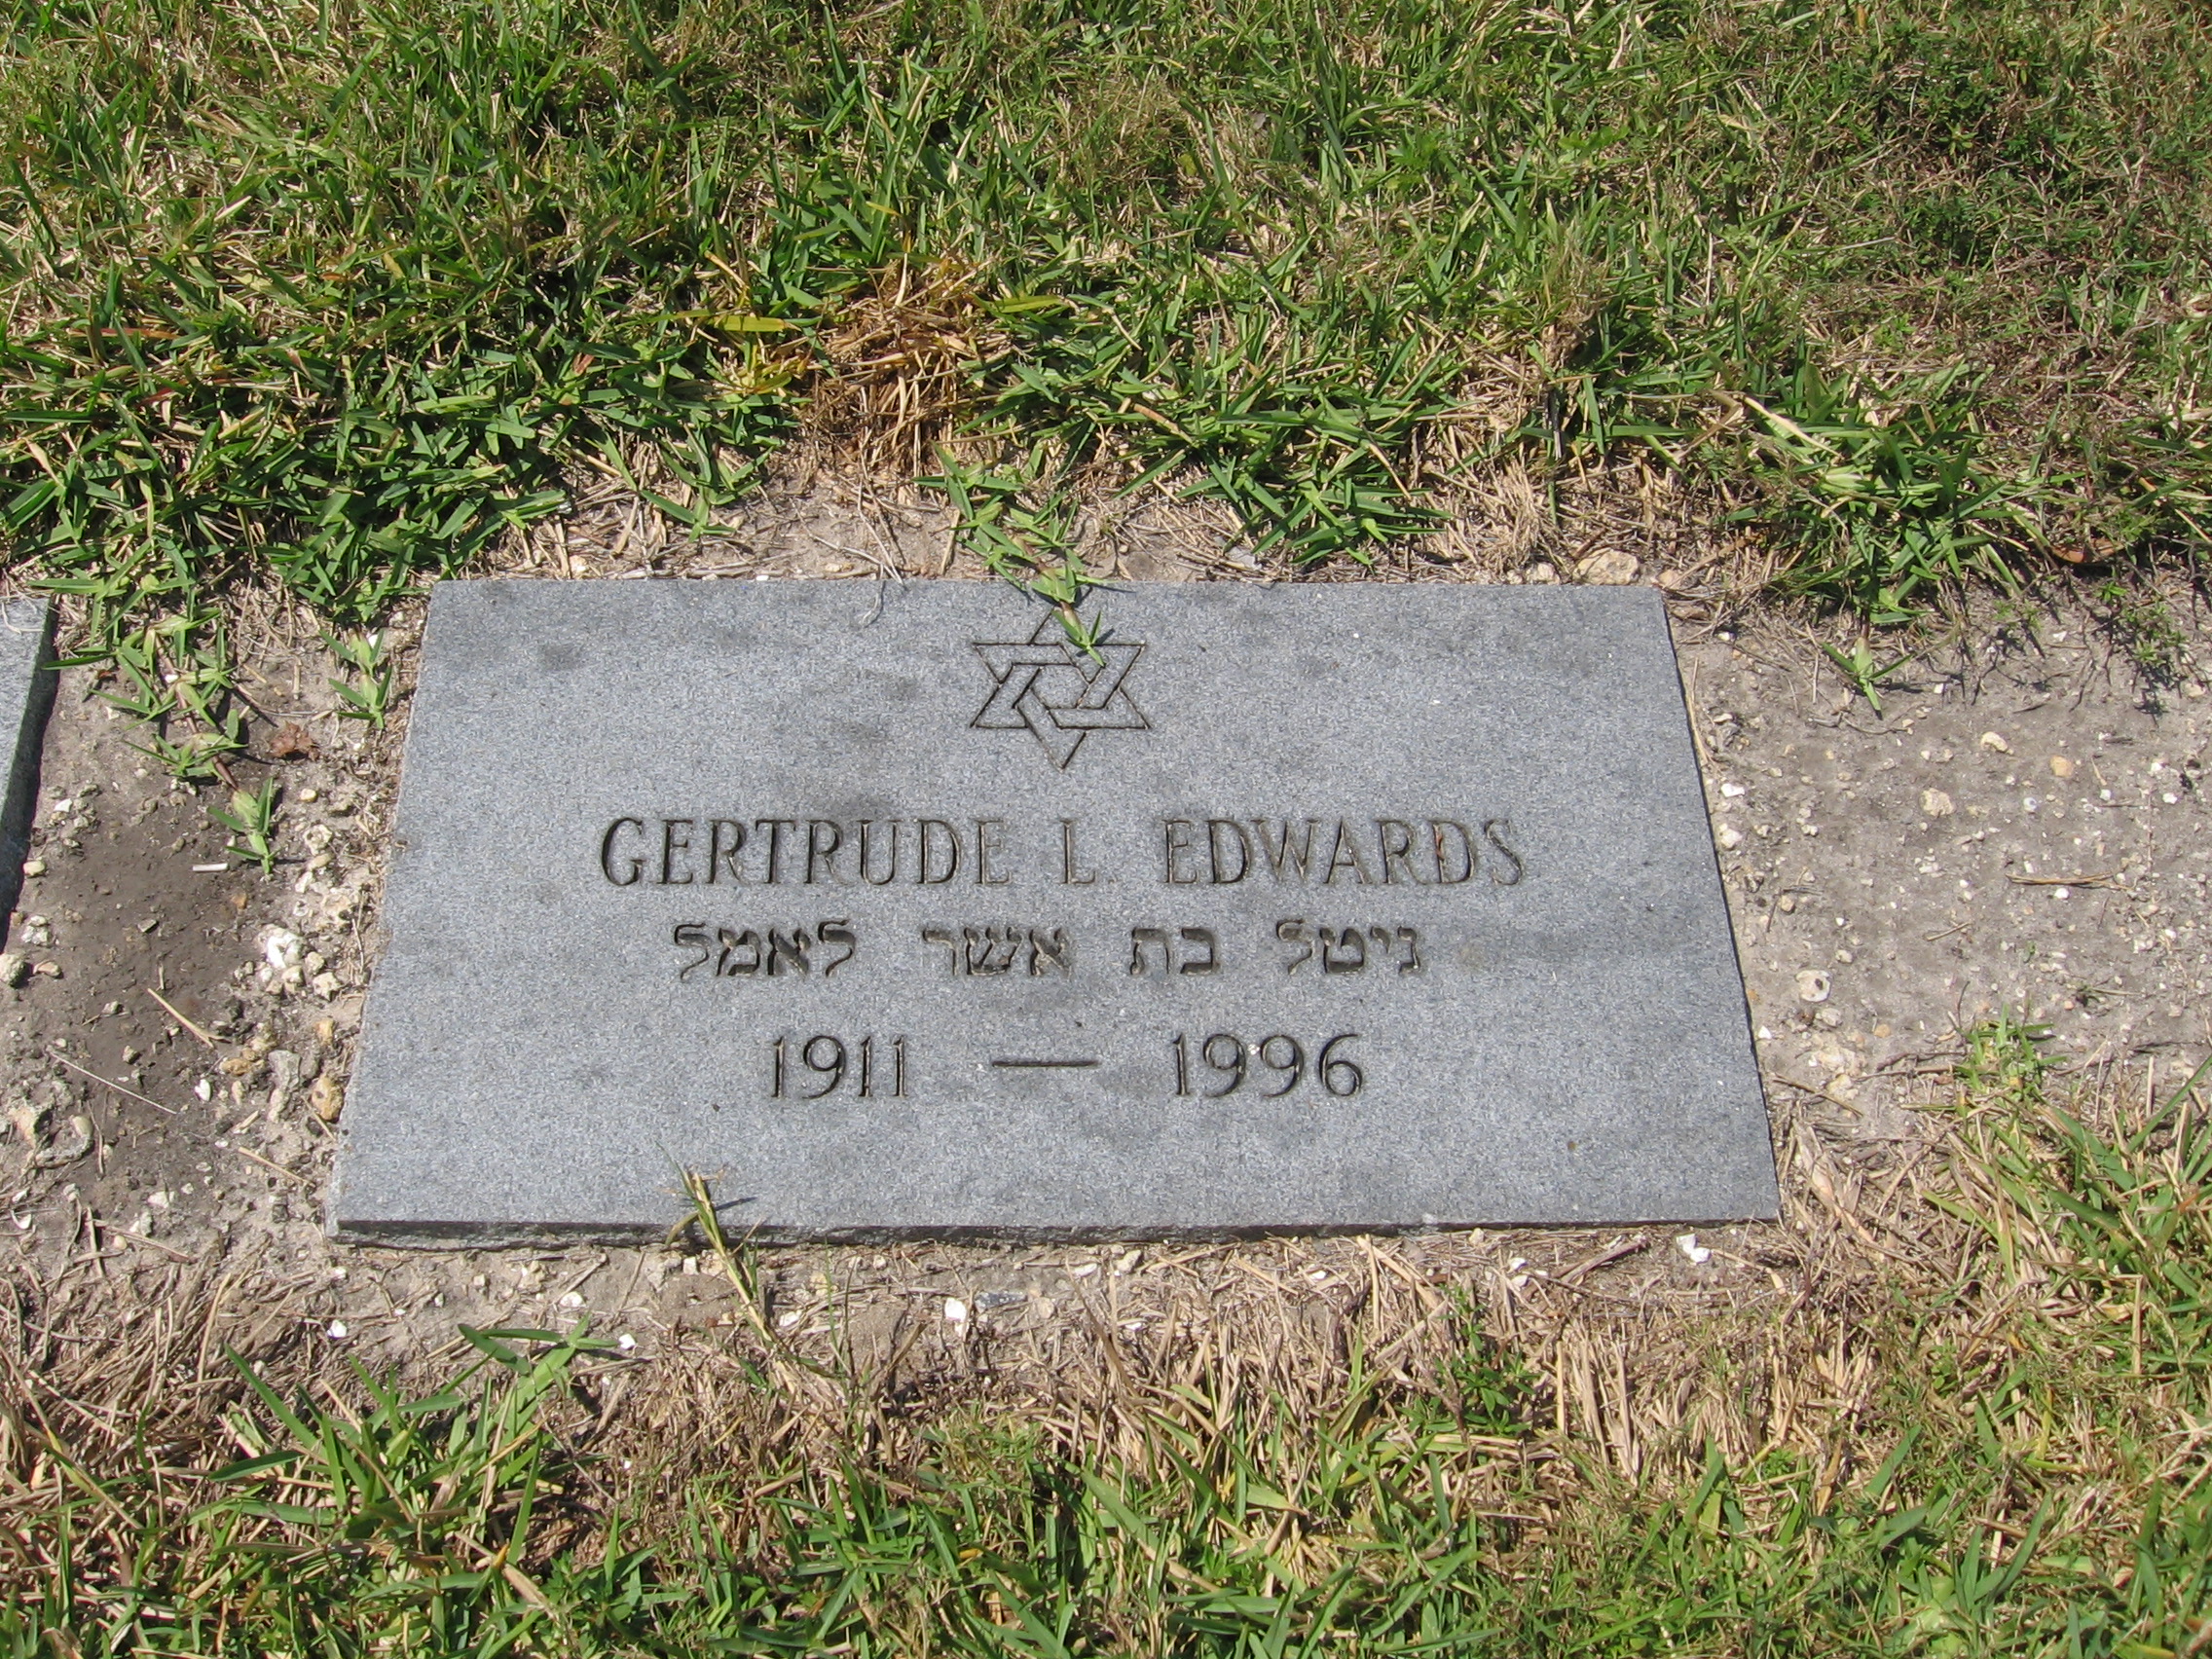 Gertrude L Edwards